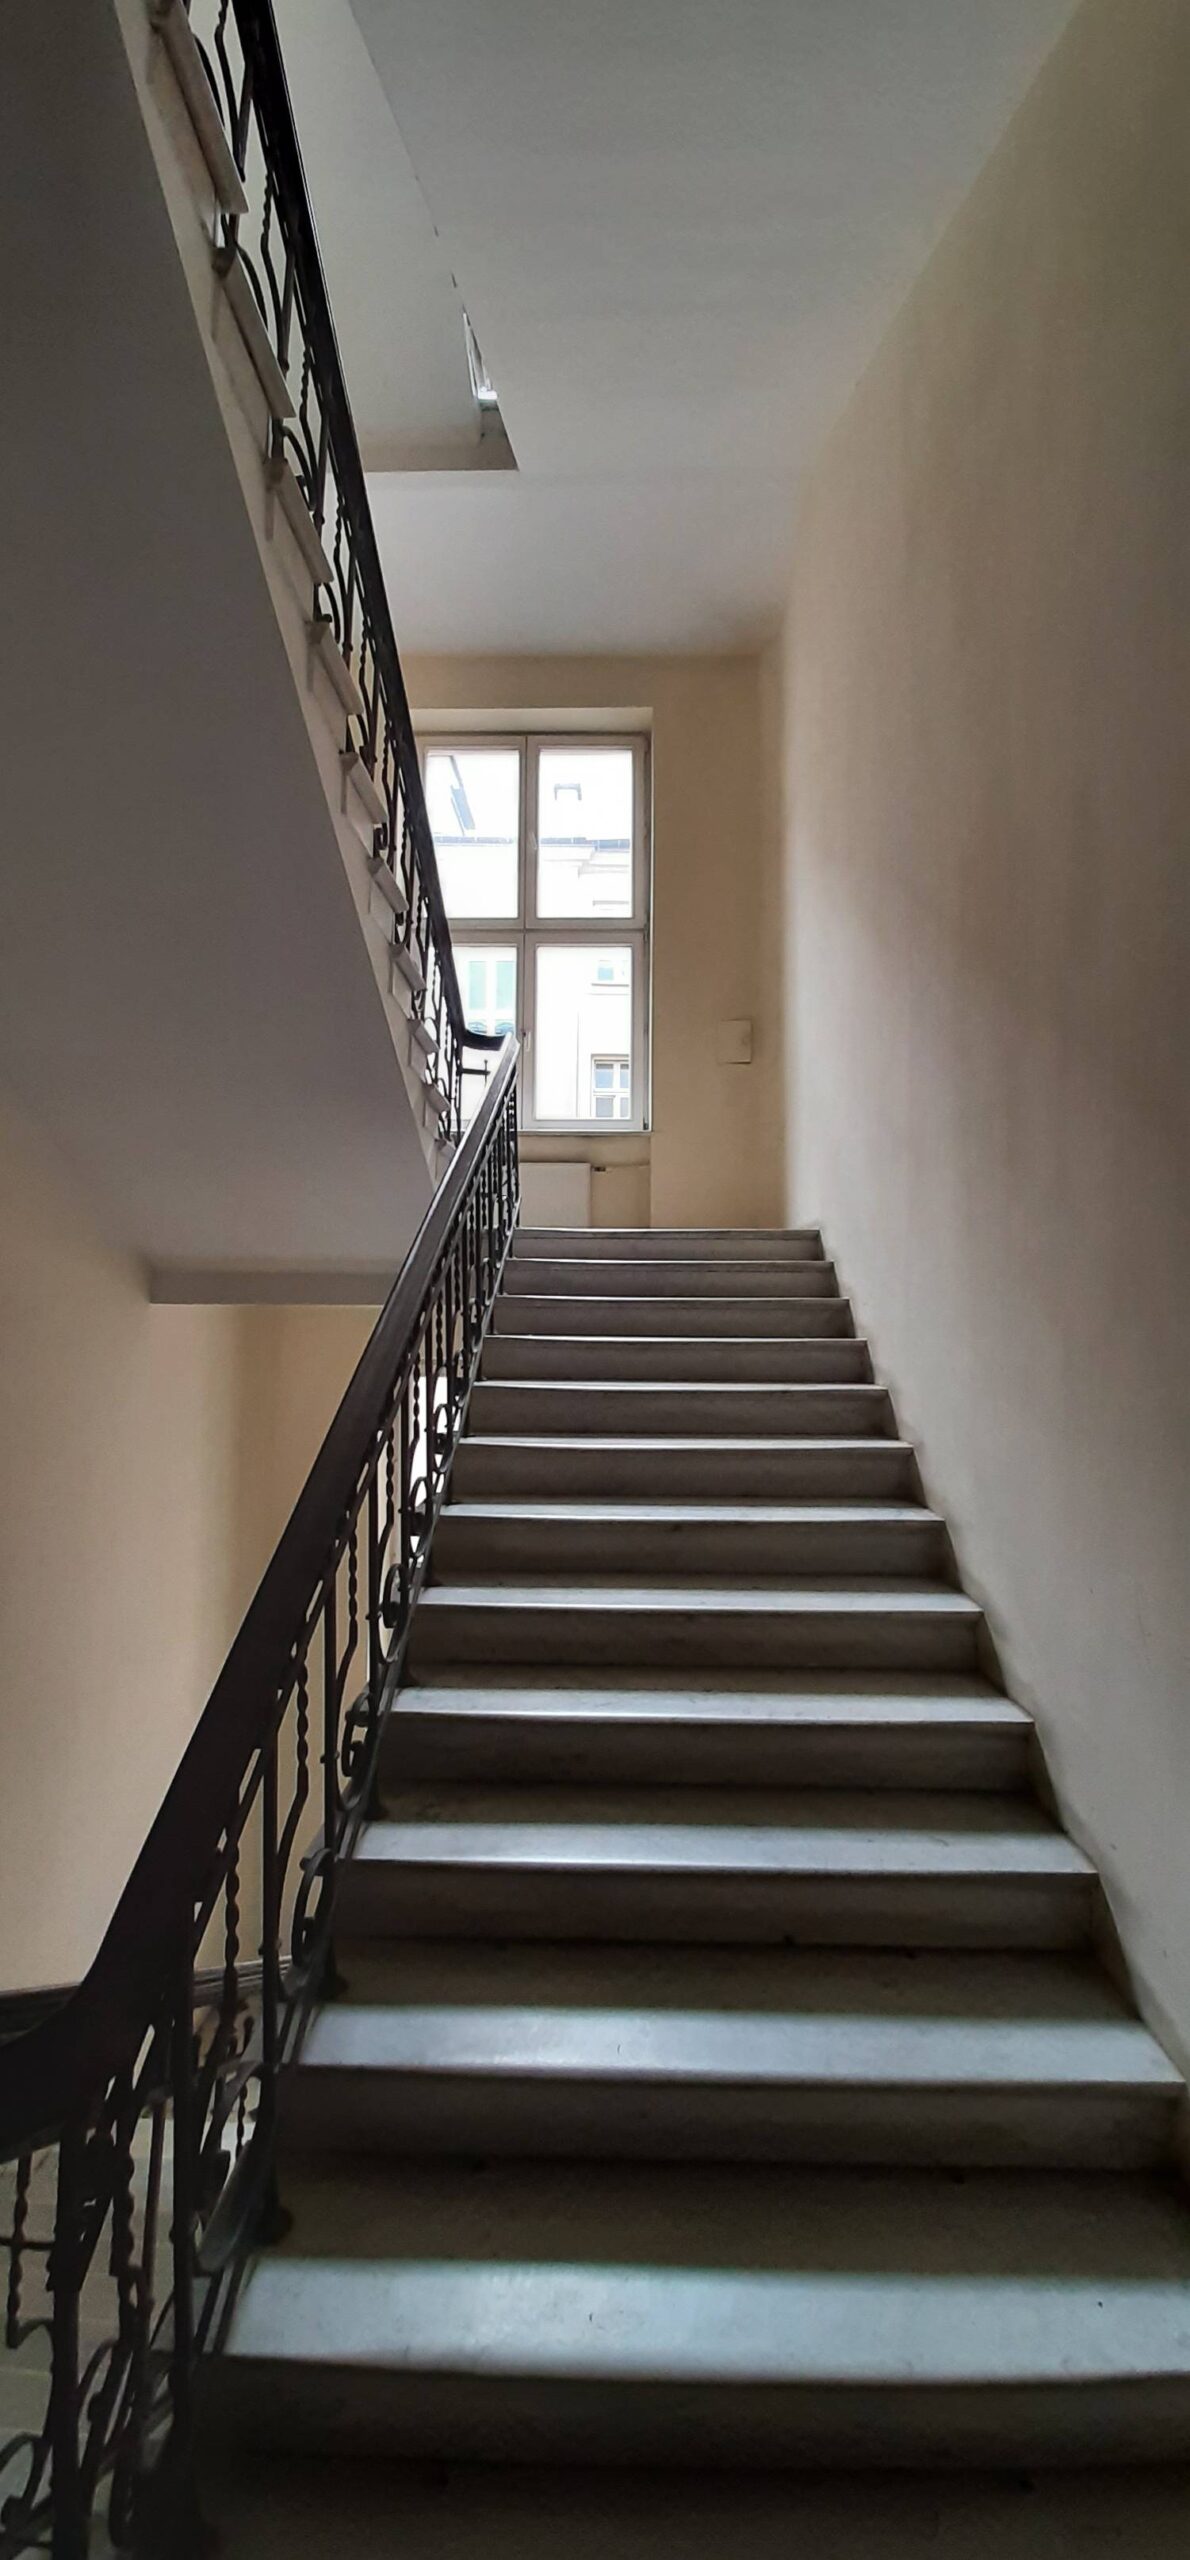 Główna klatka schodowa. Balustrada (kuta). Marmurowe schody. Fot. Agnieszka Dziubiel 2022 r., źródło: AOD III.